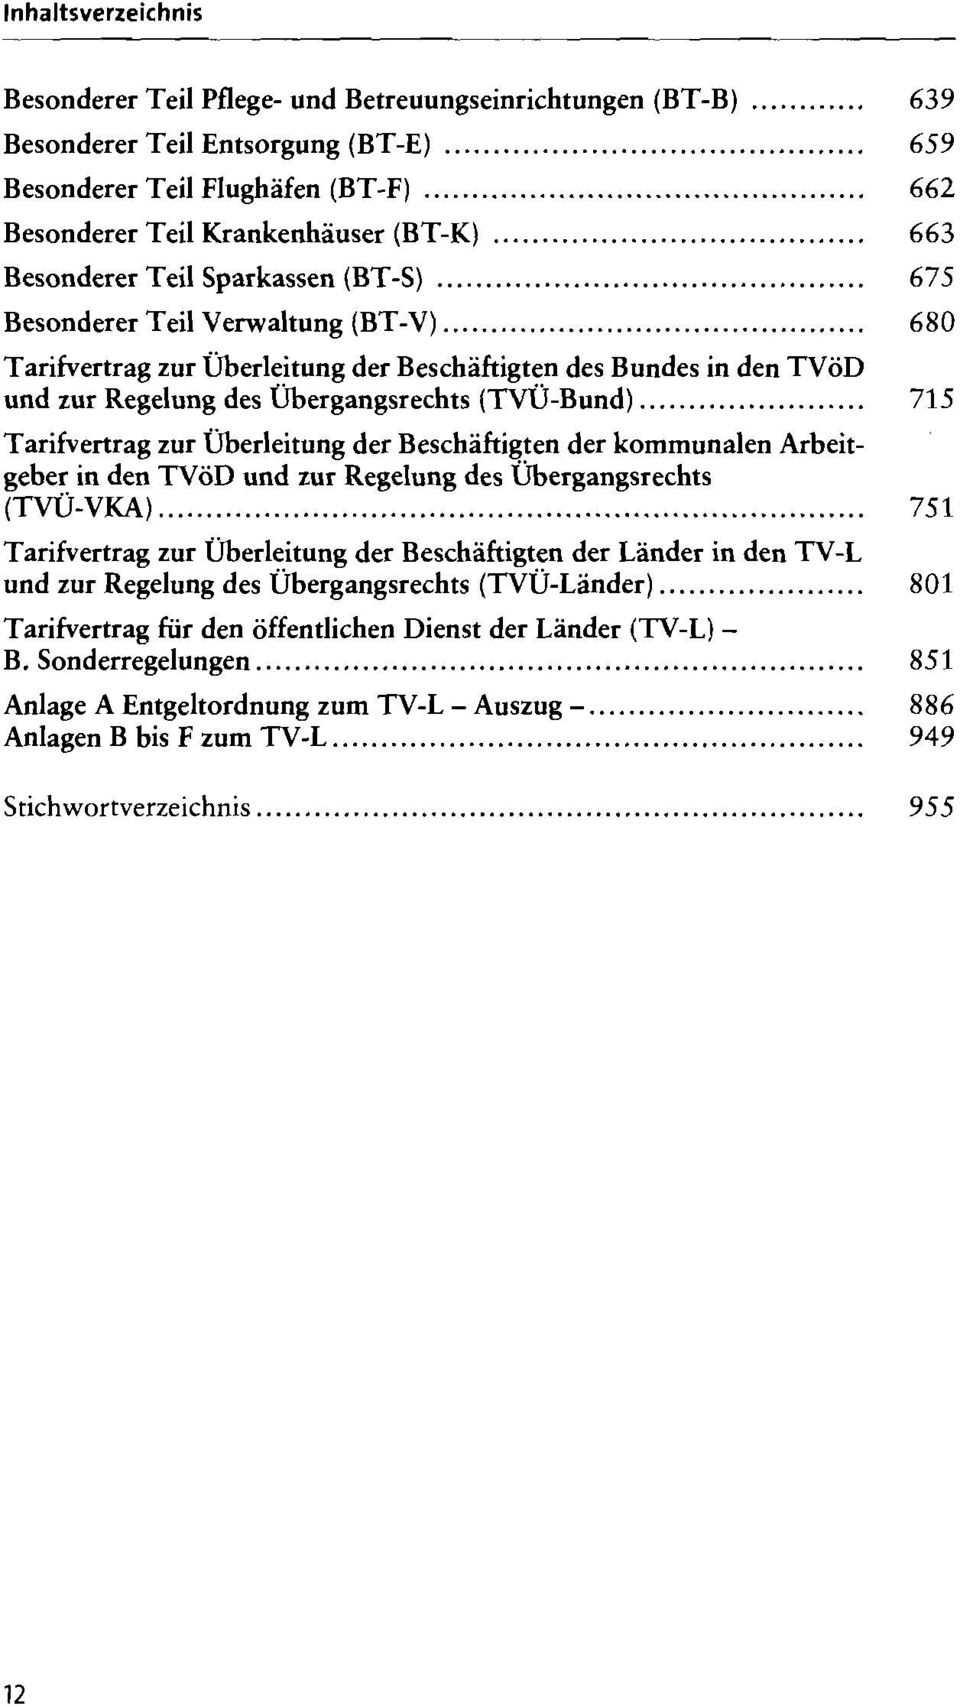 Tarifvertrag zur Überleitung der Beschäftigten des Bundes in den TVöD und zur Regelung des Übergangsrechts (TVÜ-Bund).